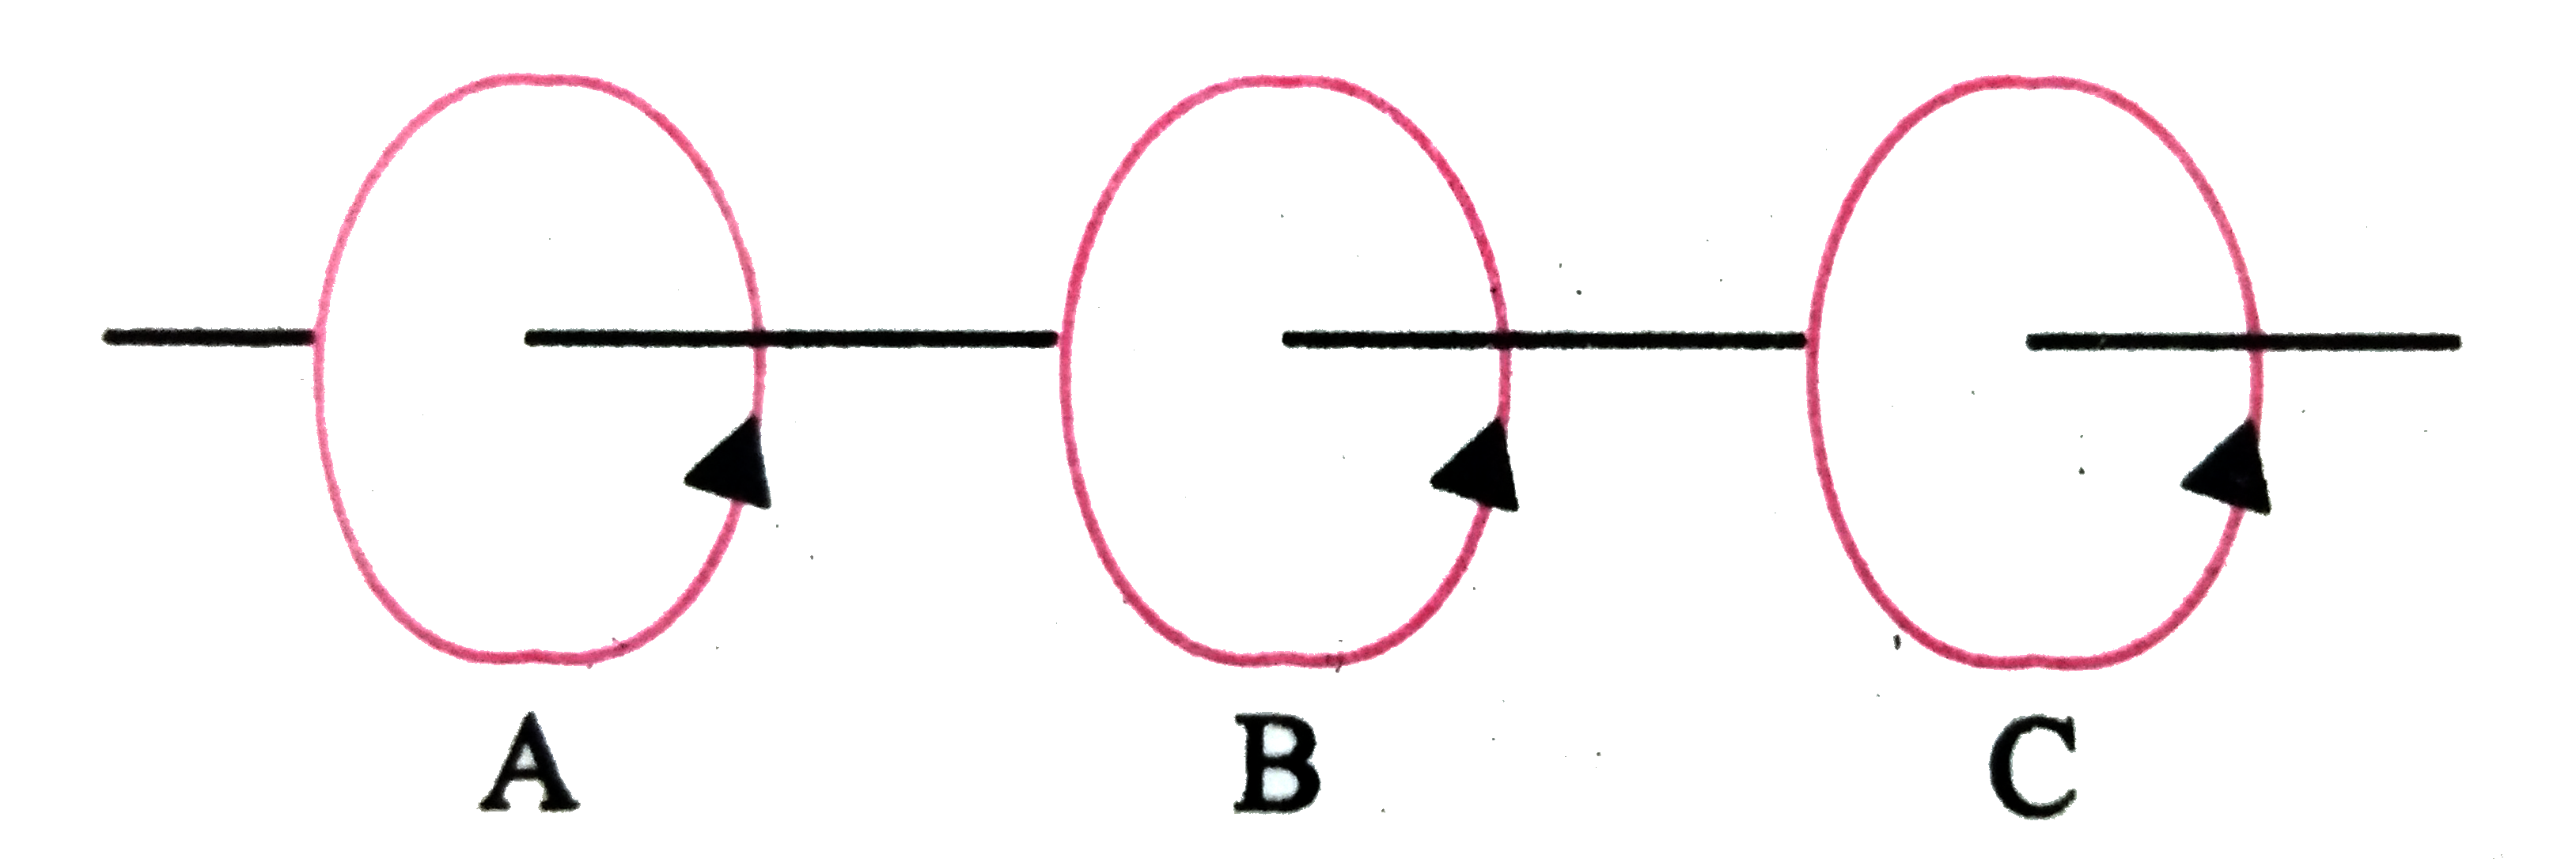 तीन एक जैसी कुण्डलियाँ  A,B  और   C संलग्न  चित्र के अनुसार स्थित है  । A और  C में धाराएँ है । B  और  C स्थिर  है तथा  A  को  B  की ओर चलाया जाता है । क्या B  में धारा  प्रेरित होगी ? यदि हाँ तो इसकी दिशा क्या होगी ?